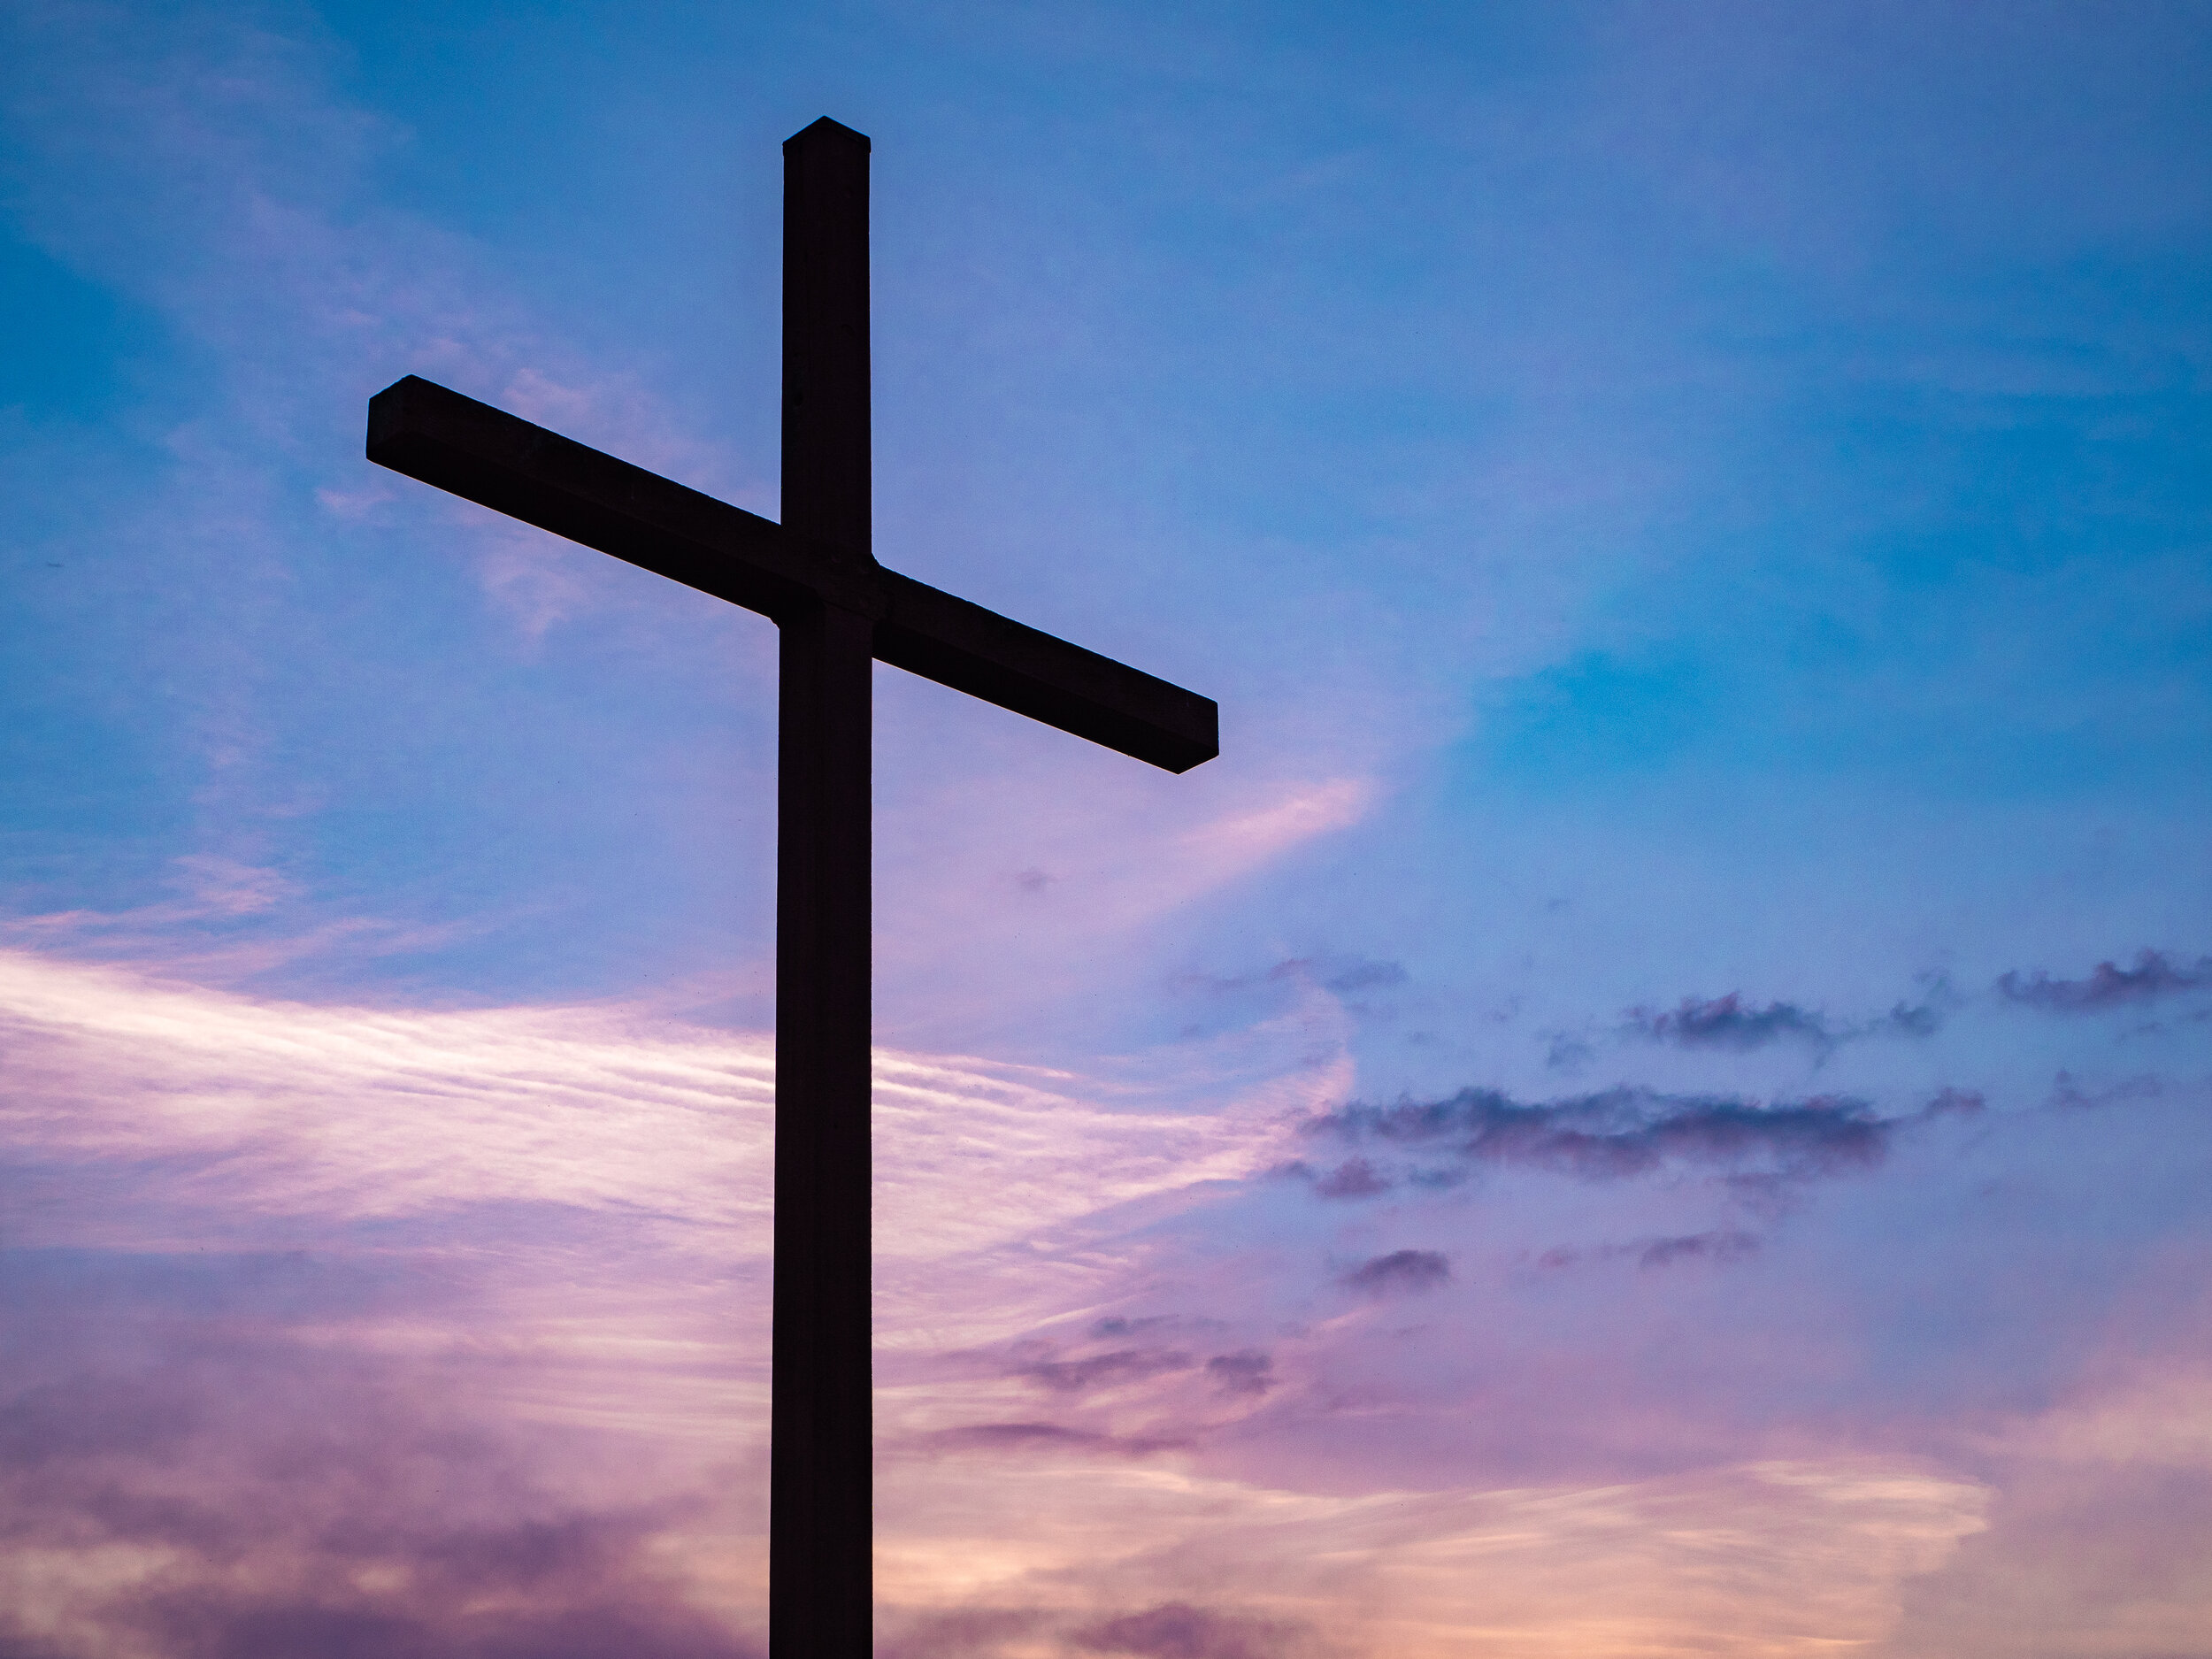 Alt 文本:一個傾斜的木十字架,在由藍色和紫色色調的日出上捕獲。